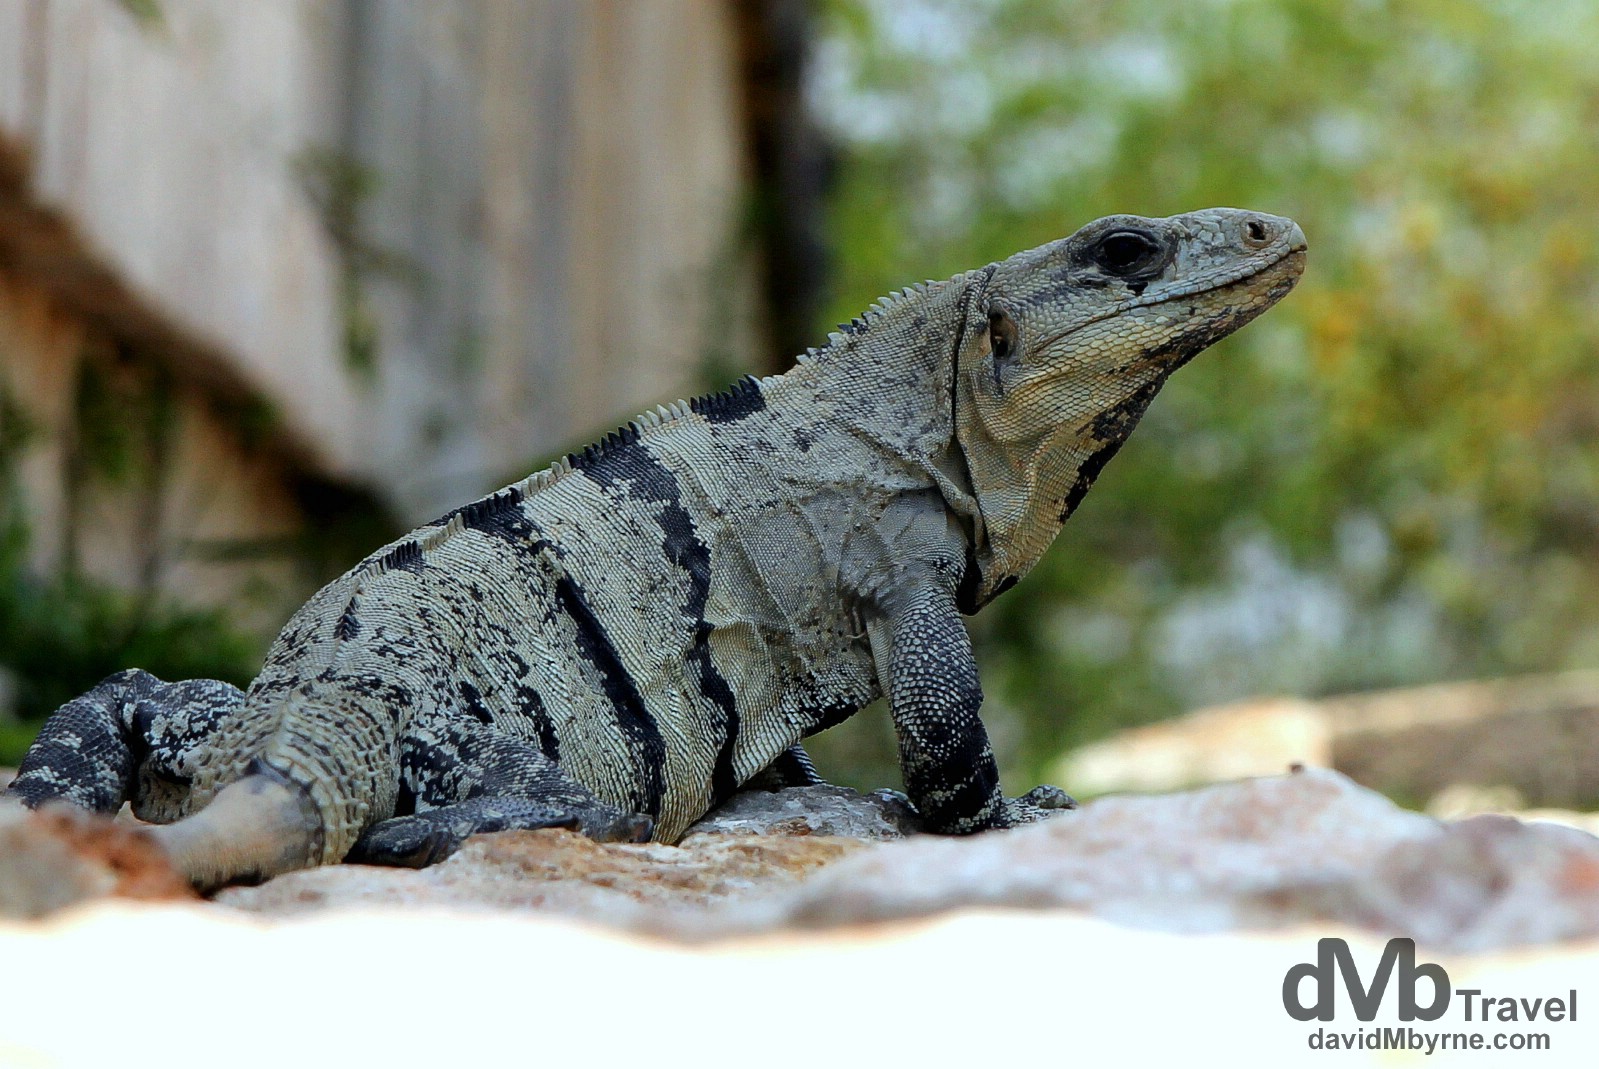 A lizard resting in the shade at the Uxmal Mayan ruins, Yucatan Peninsula, Mexico. May 2nd 2013.